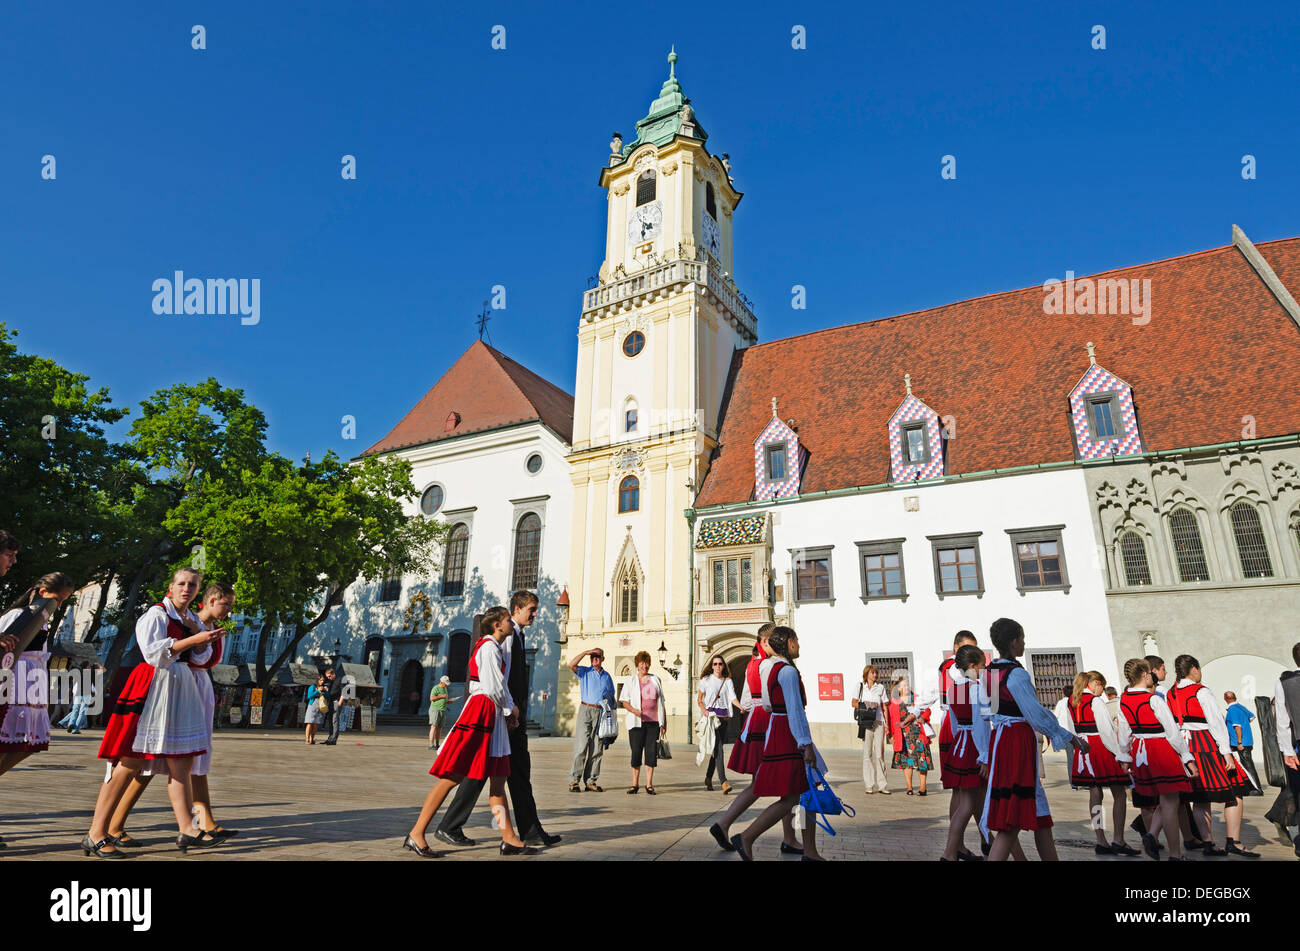 Les enfants en costume traditionnel sur la place principale, l'Ancien hôtel de ville musée municipal datant de 1421, Bratislava, Slovaquie Banque D'Images